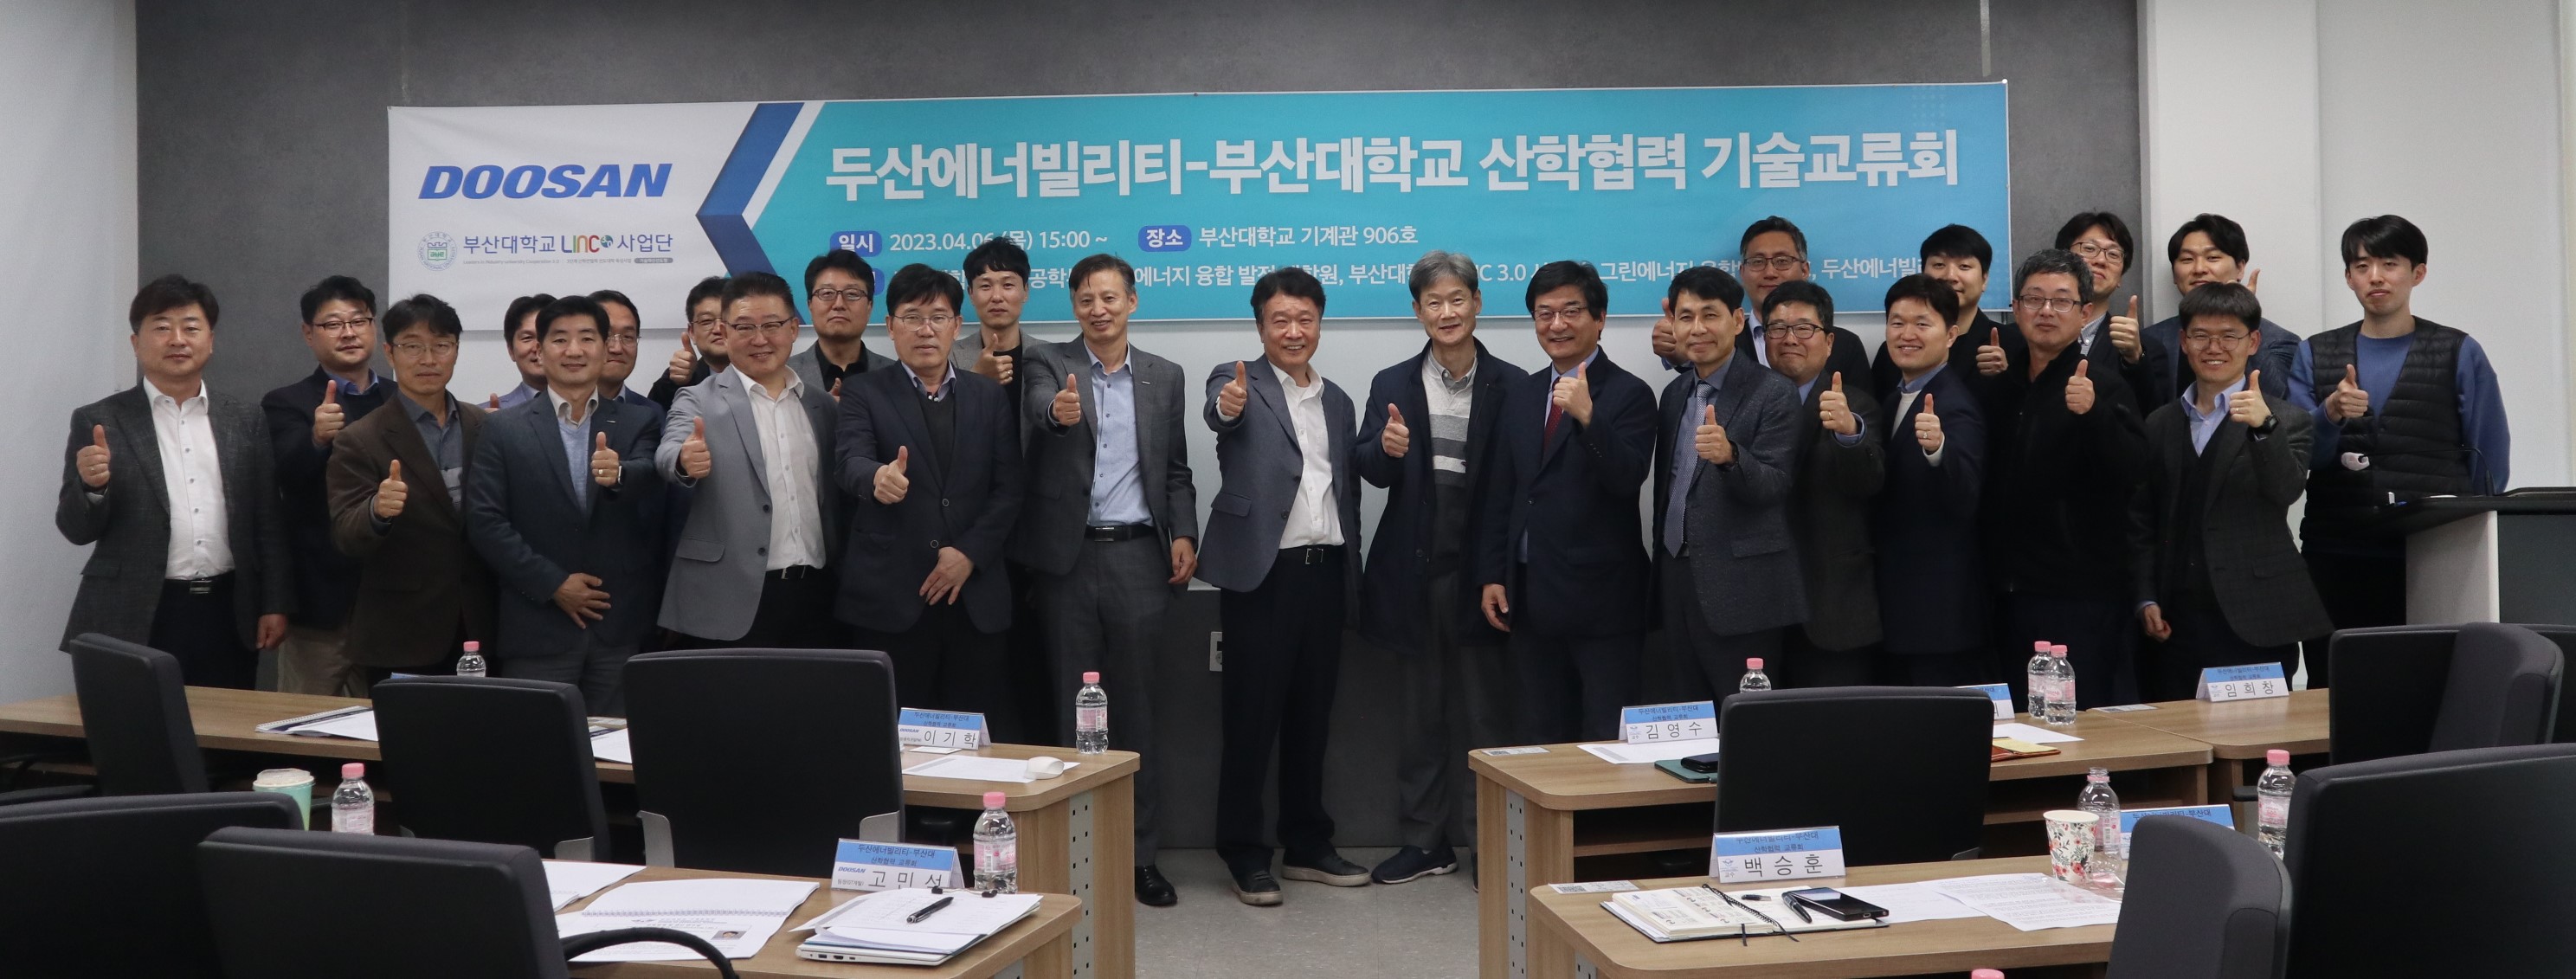 산학협력 기술교류회 개최 두산-단체.JPG